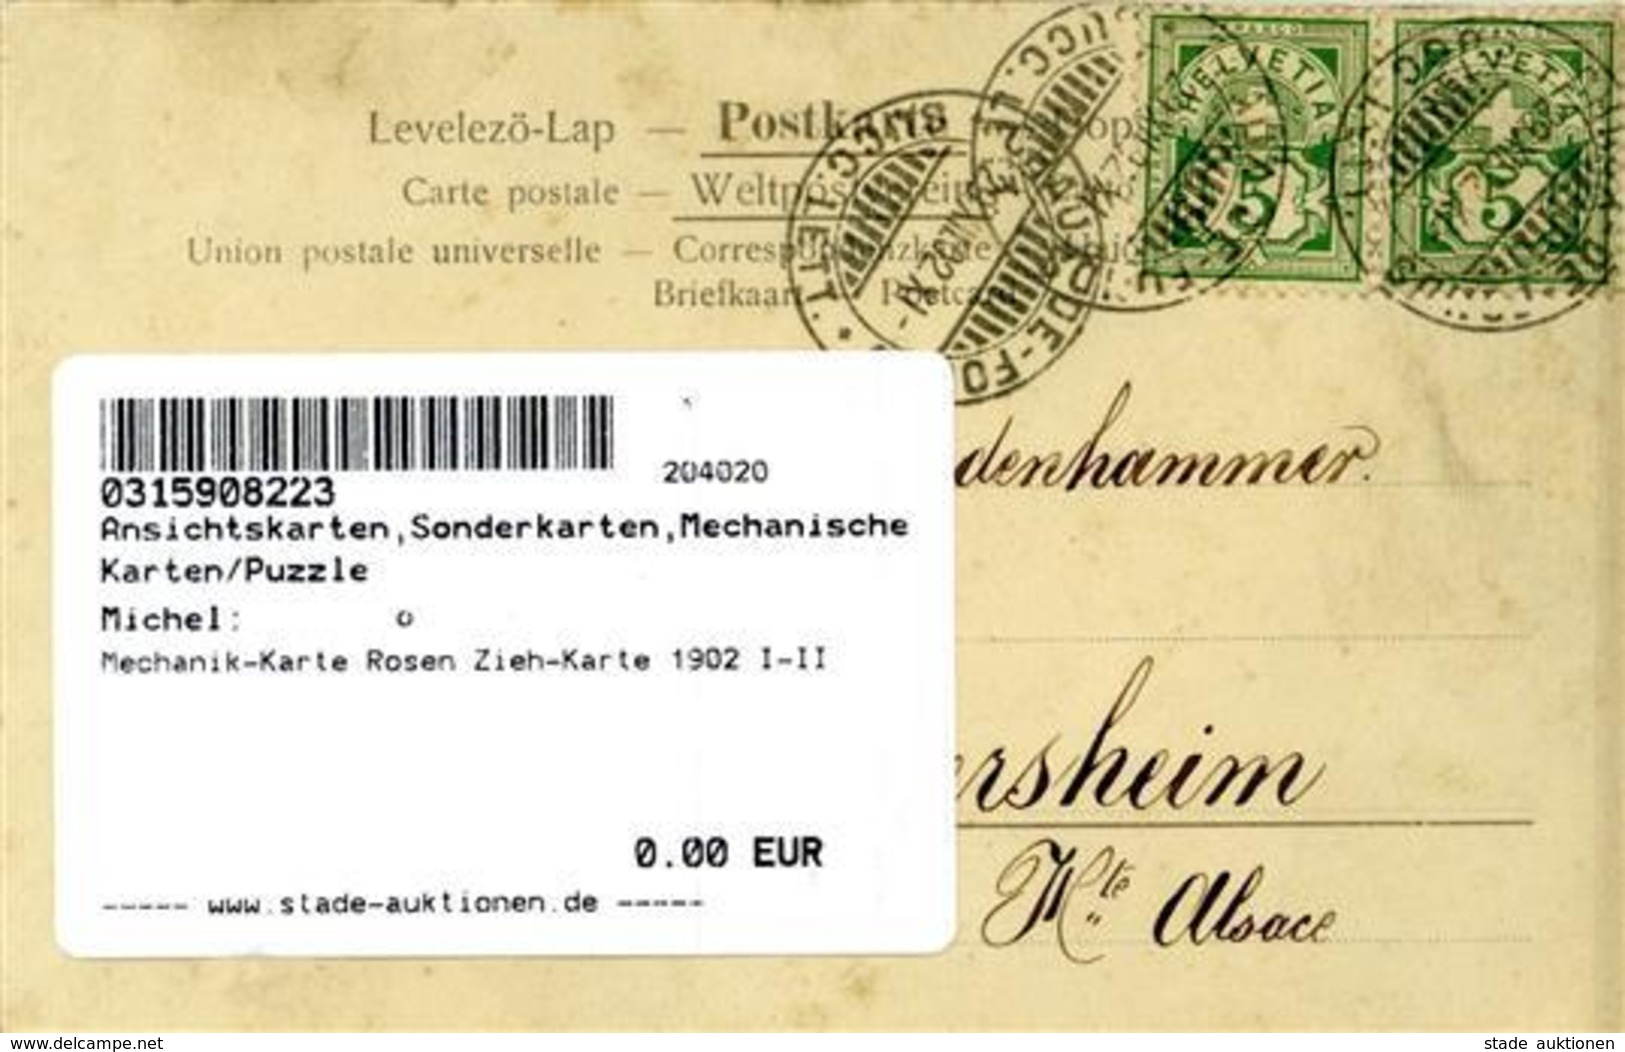 Mechanik-Karte Rosen Zieh-Karte 1902 I-II - Unclassified